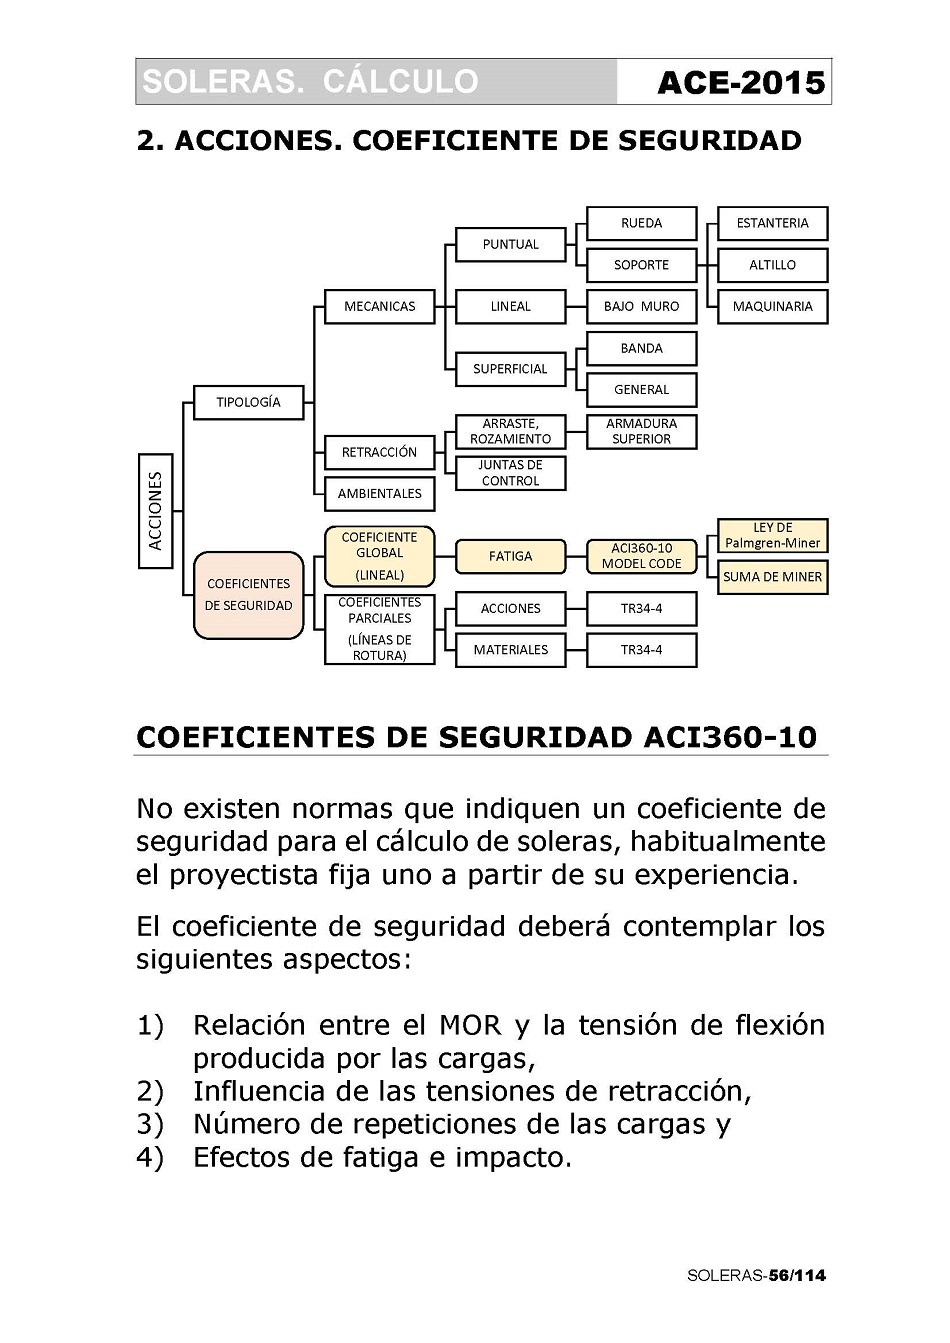 Cálculo de Soleras de Hormigón. Página 56